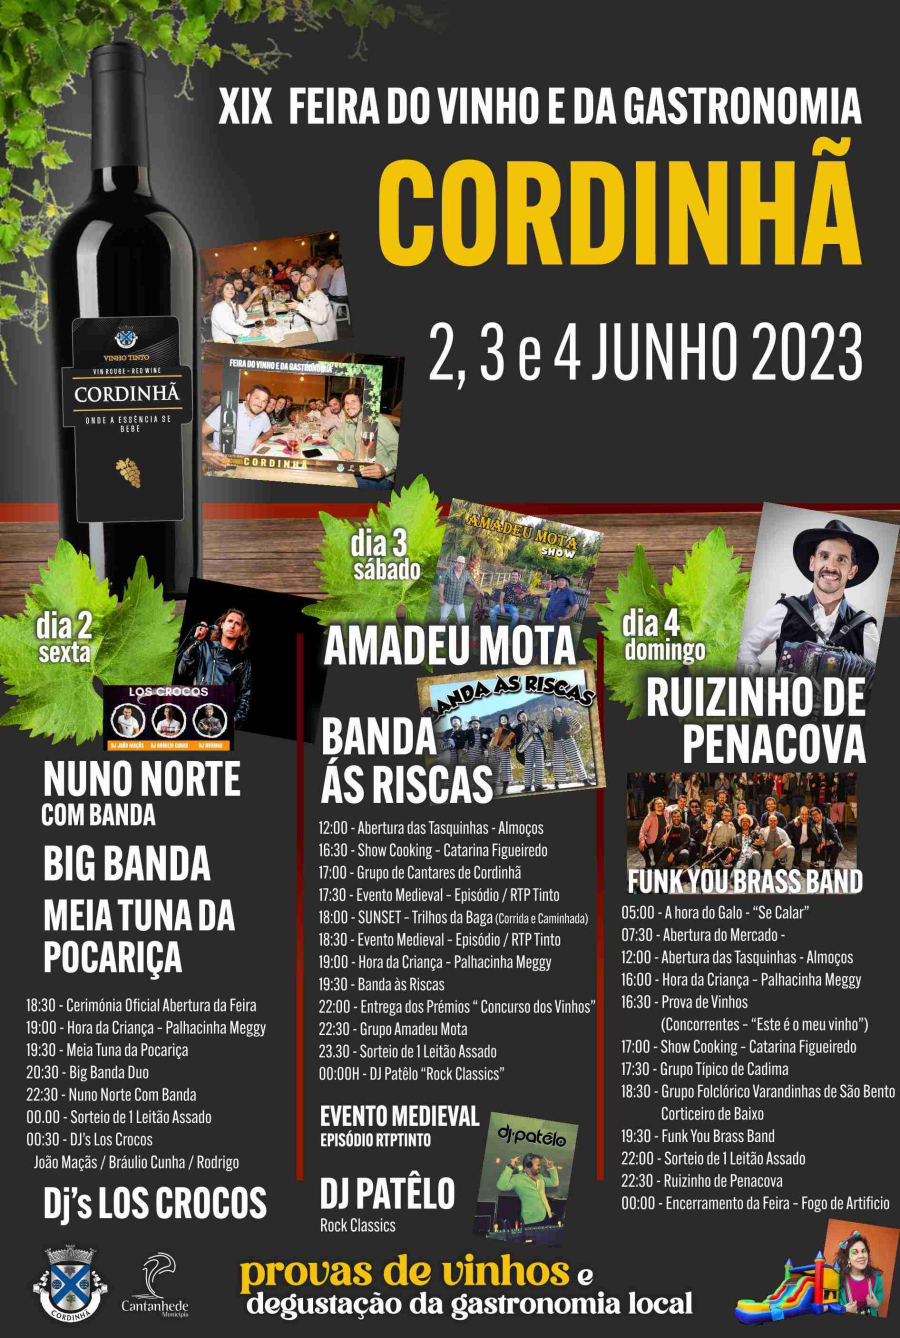 XIX Feira do Vinho e da Gastronomia de Cordinhã